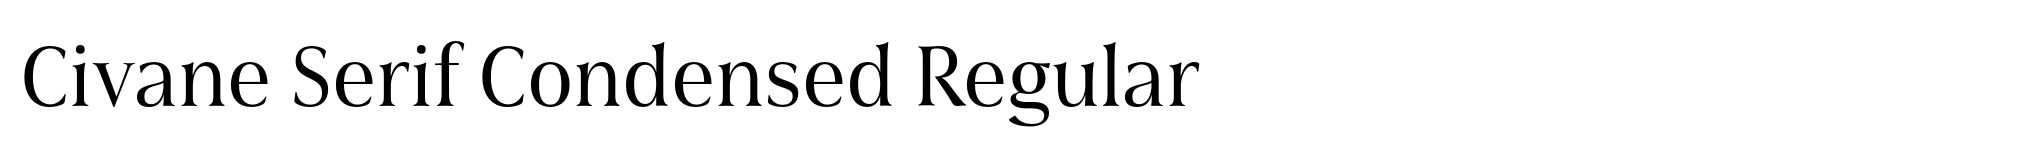 Civane Serif Condensed Regular image